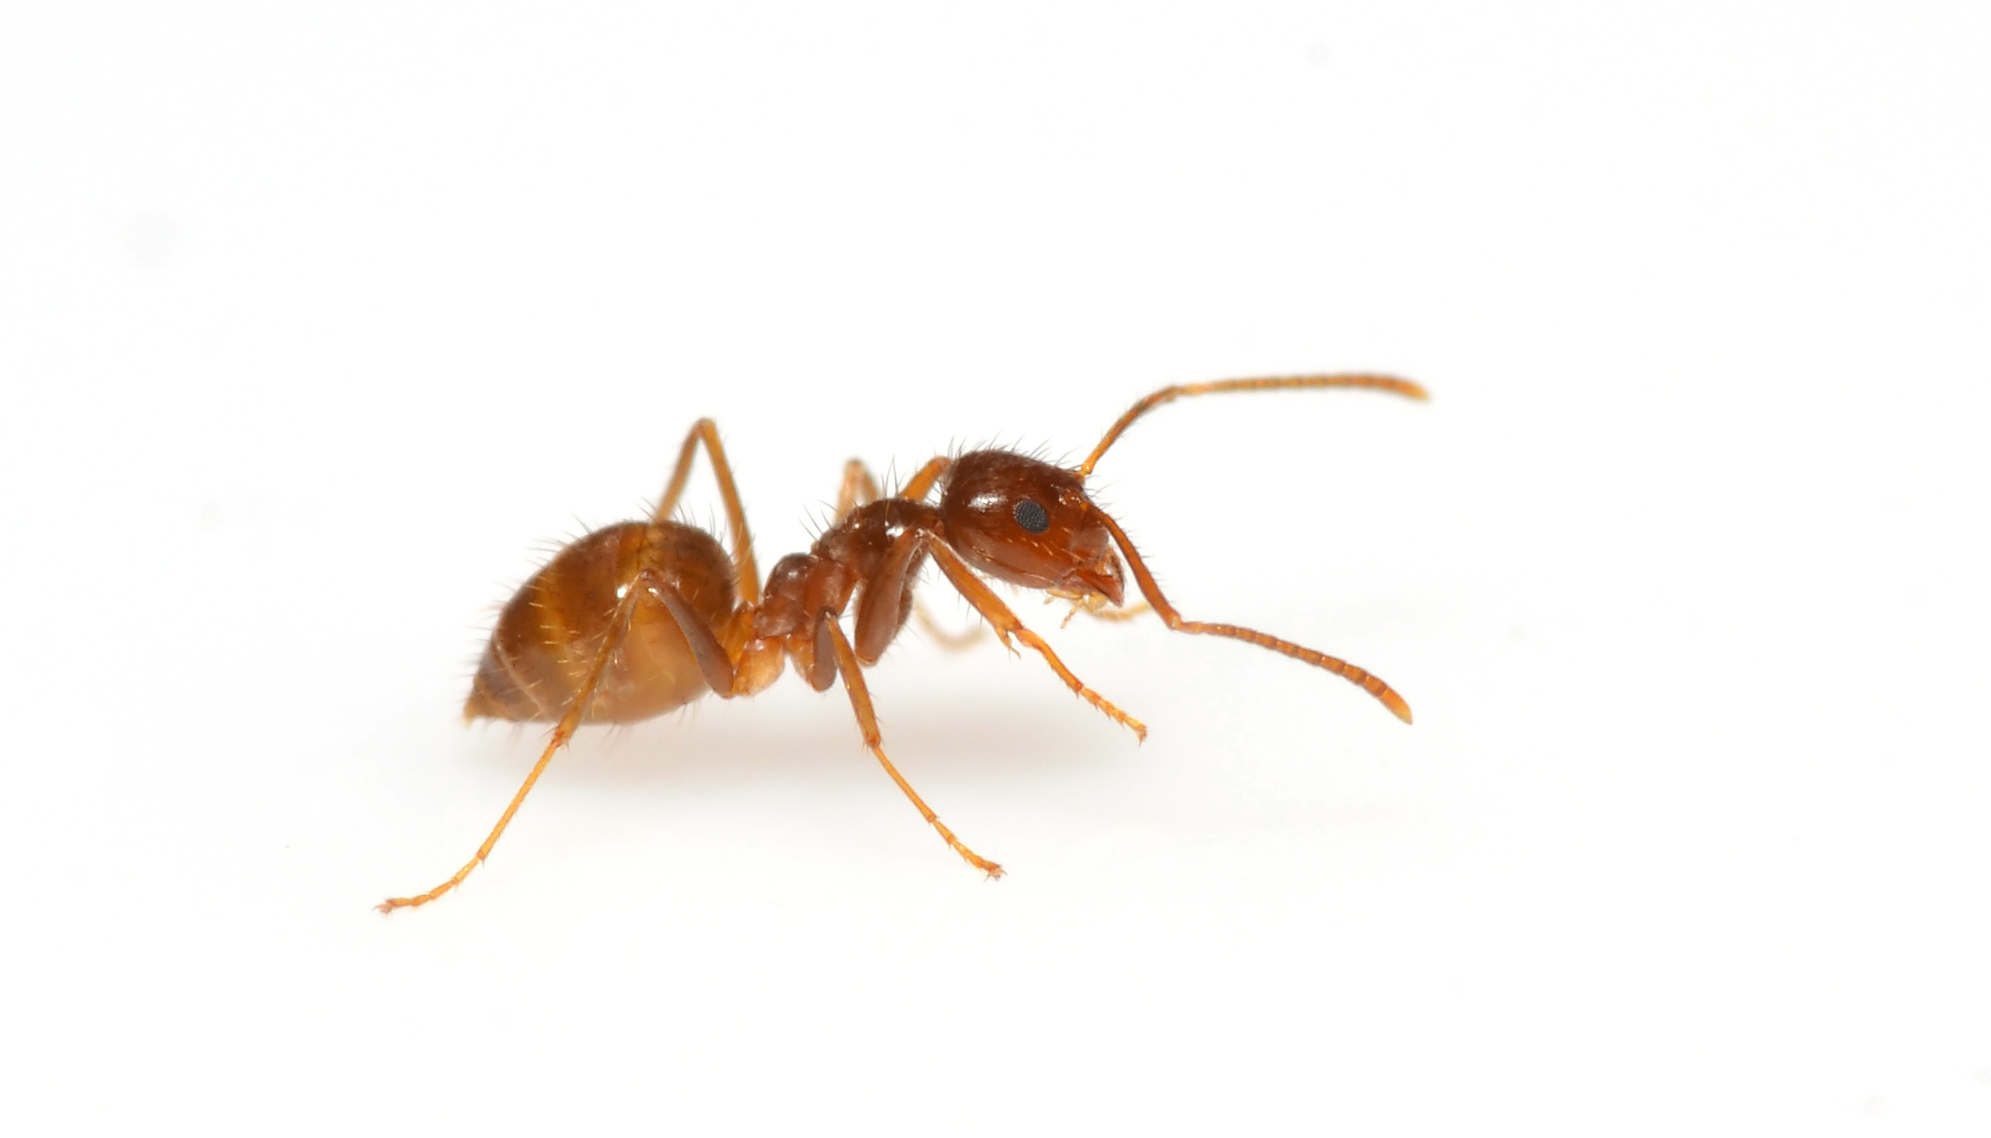 Ants photo